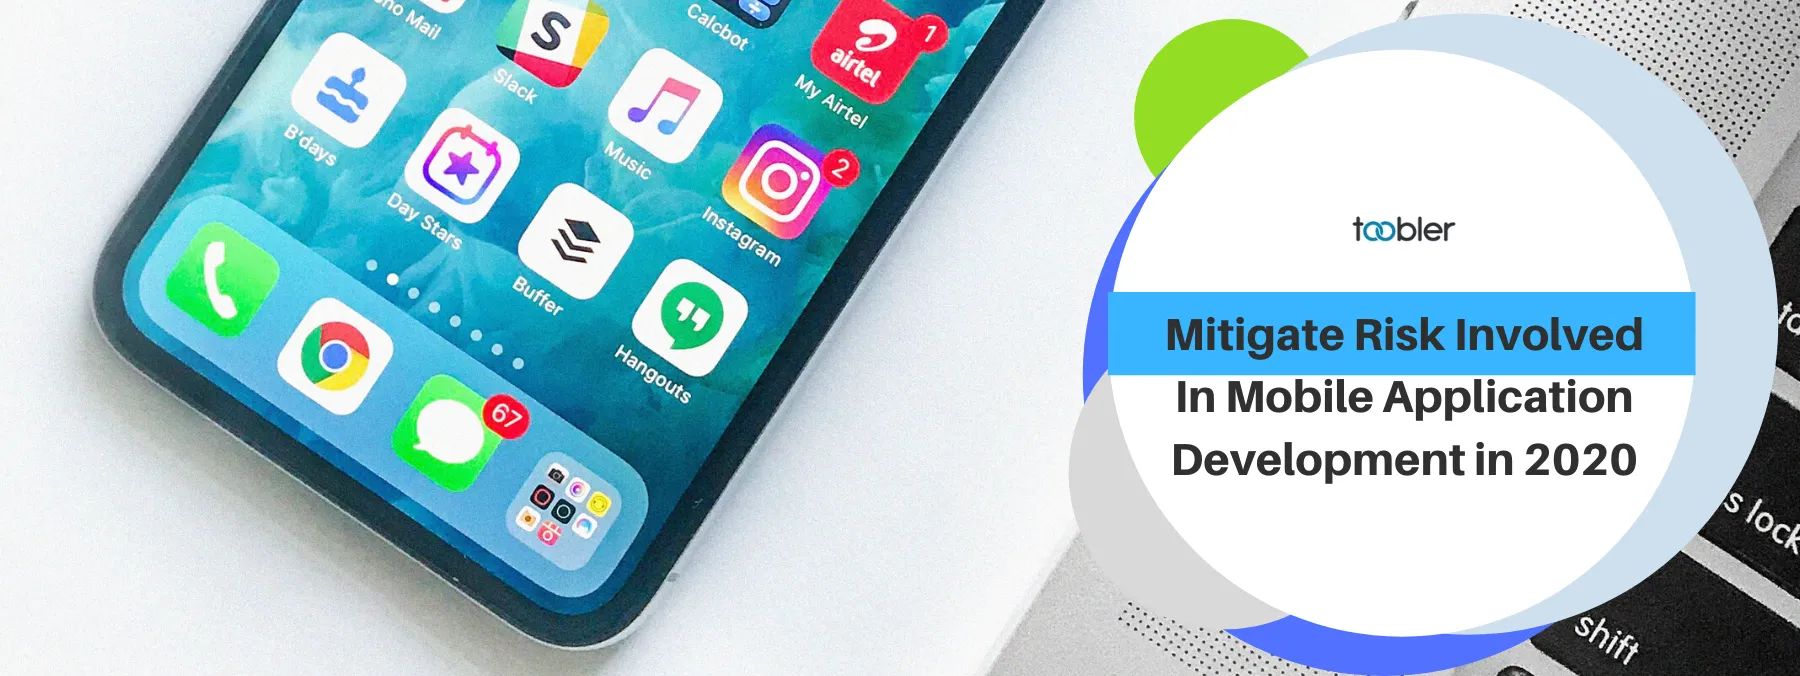 Mitigate Risk Involved In Mobile Application Development in 2020